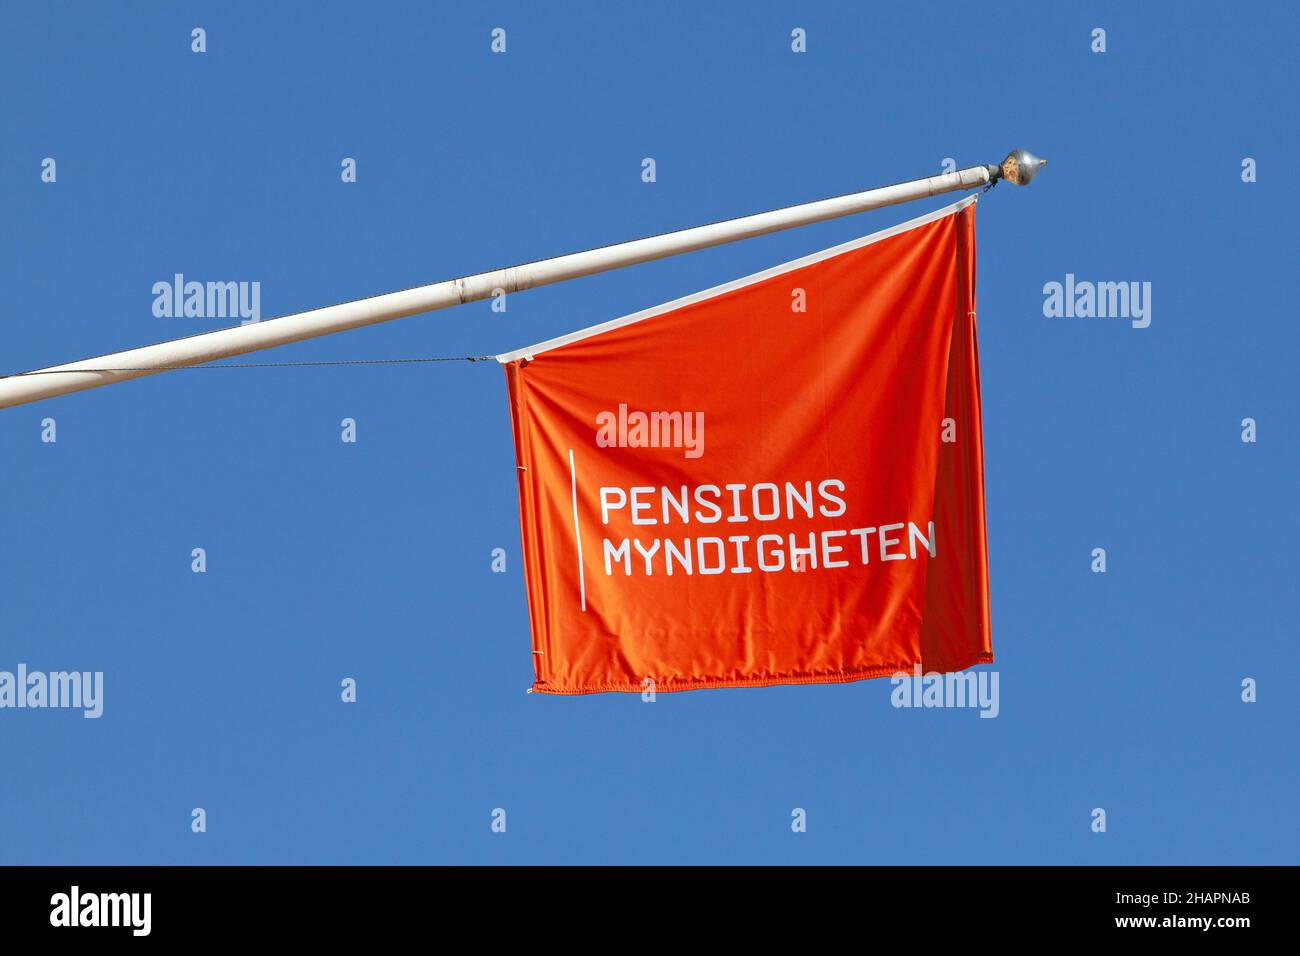 Stoccolma, Svezia - 25 marzo 2021: Una bandiera con il logo dell'Agenzia svedese per le pensioni che gestisce i pagamenti e i piani pensionistici dei cittadini svedesi. Foto Stock